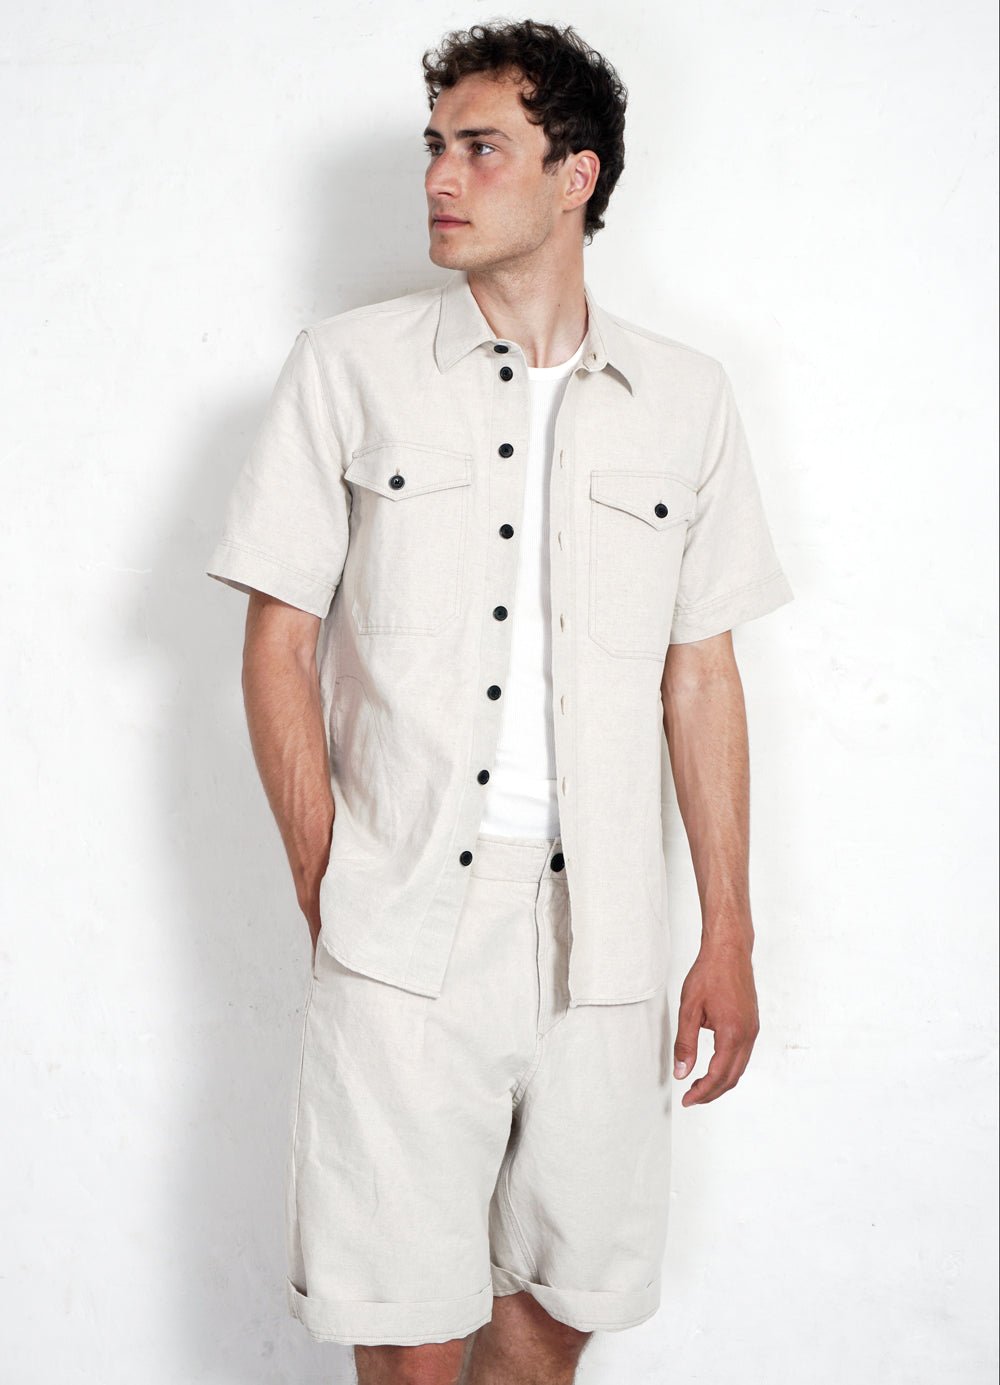 HANSEN GARMENTS - VILLY | Short Sleeve Shirt | Flax Nature - HANSEN Garments